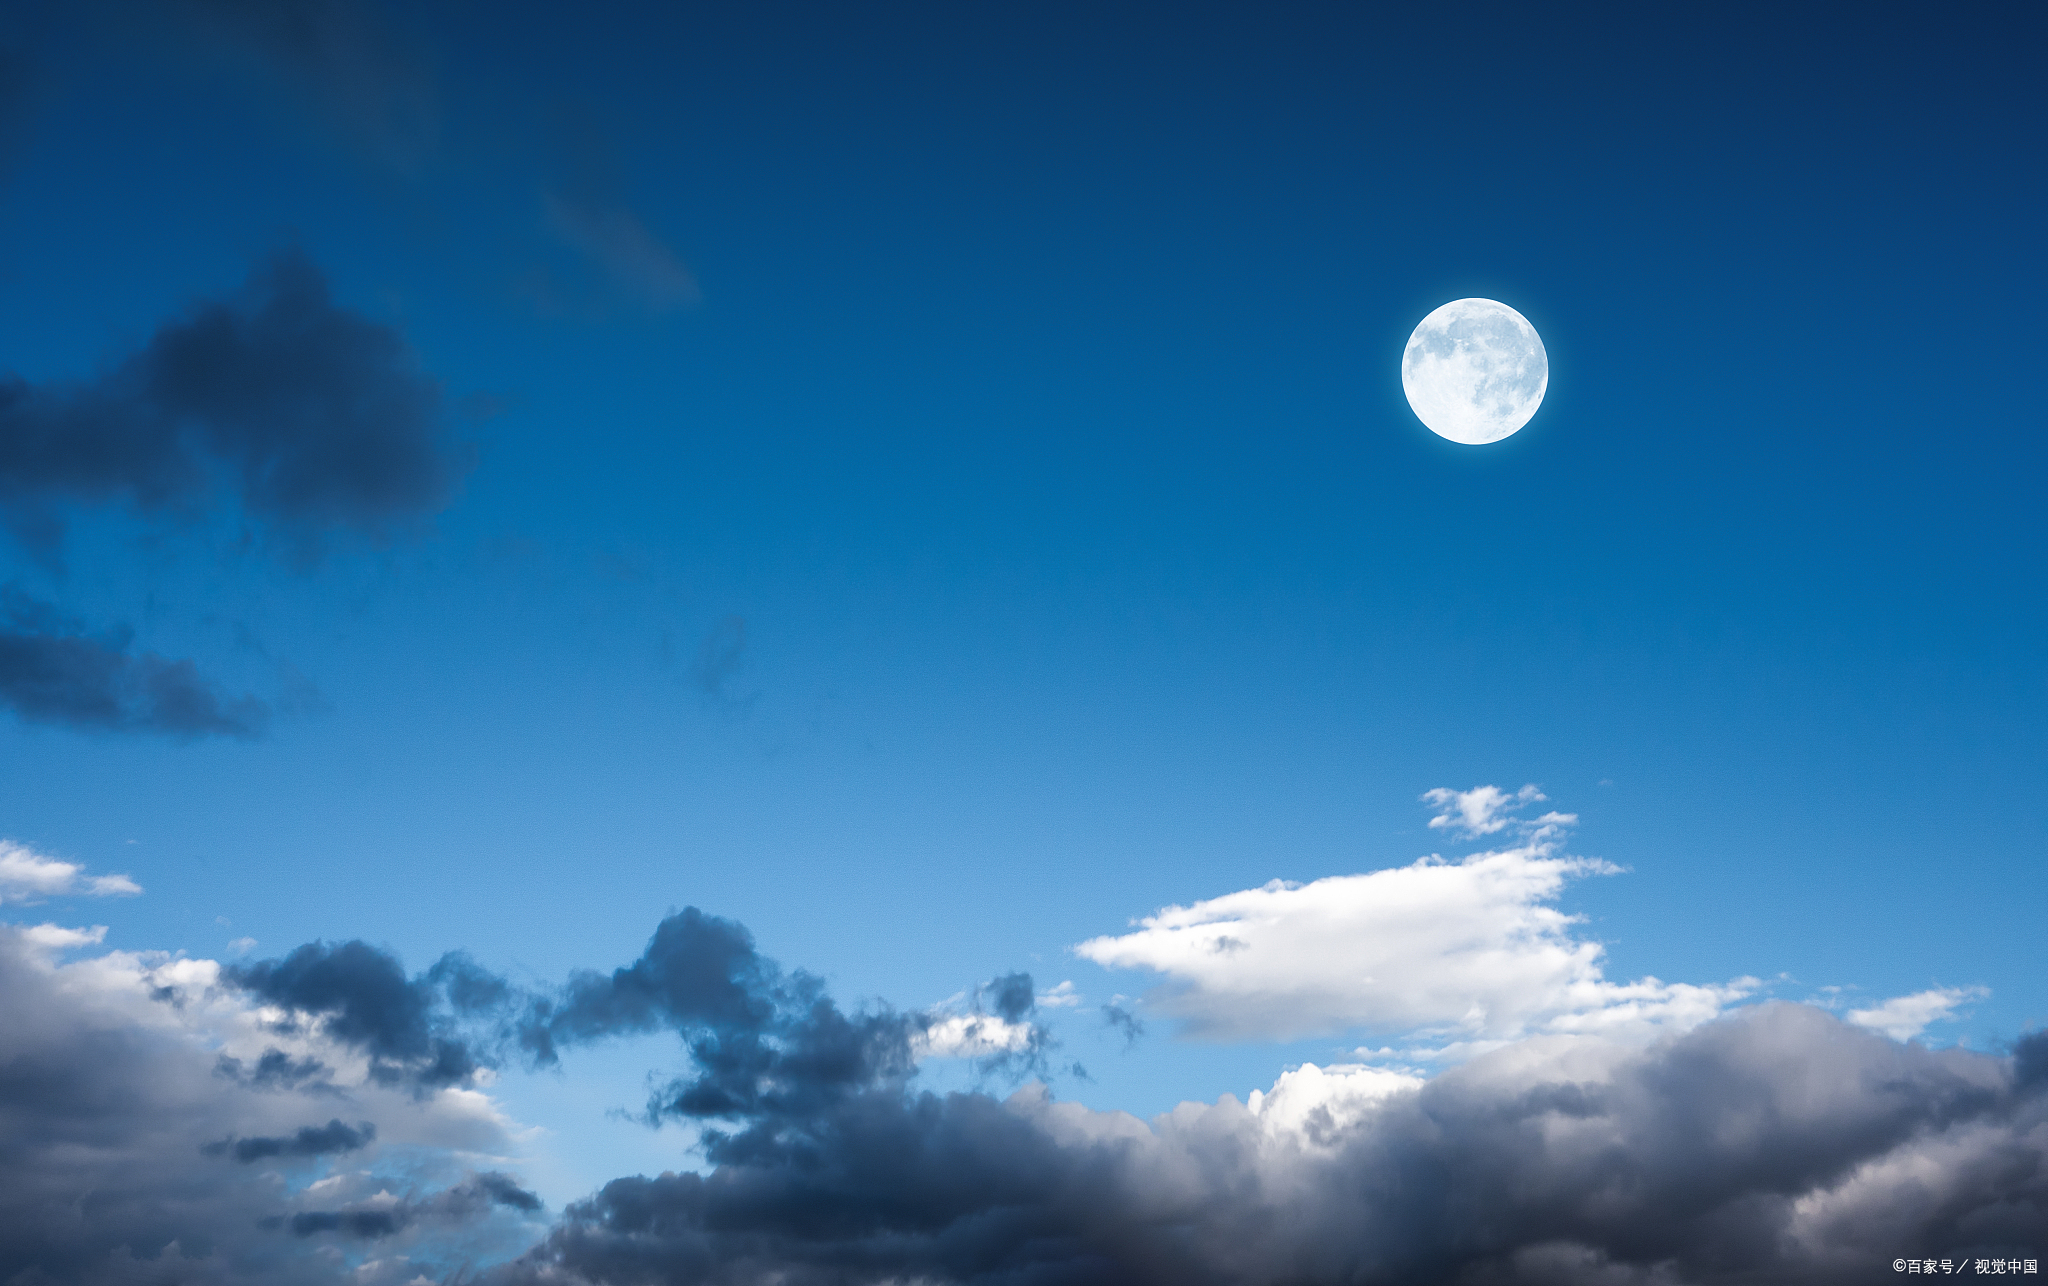 乌云散去 月亮在天边露出了真容